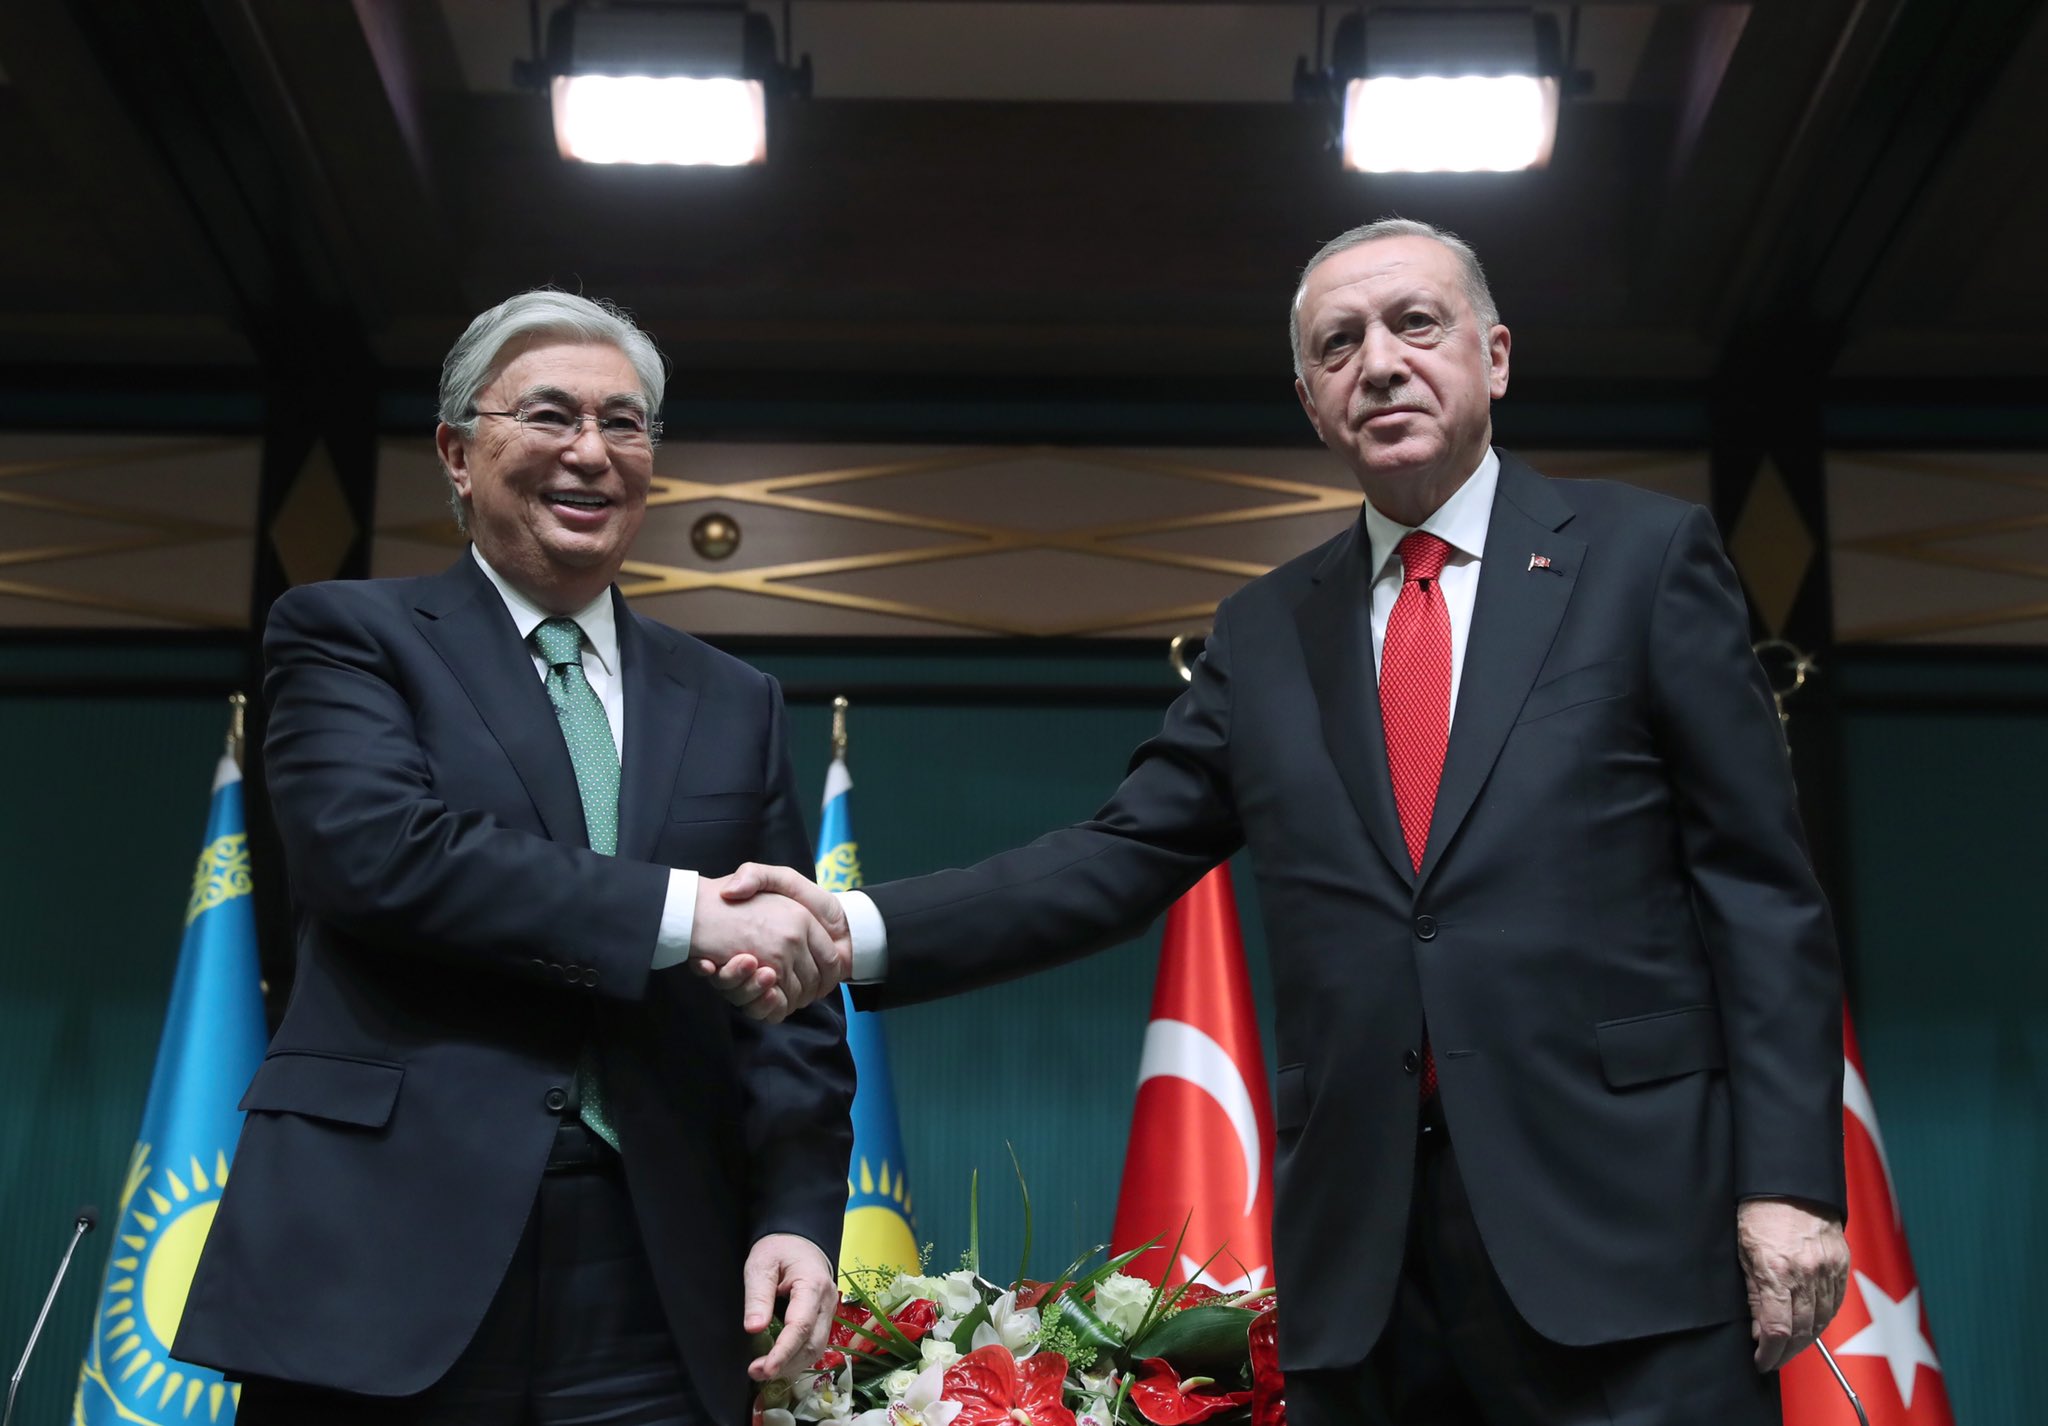 Erdoğan: Türkiye-Kazakistan ticaret hacmi 5 milyar dolar hedefini aştı